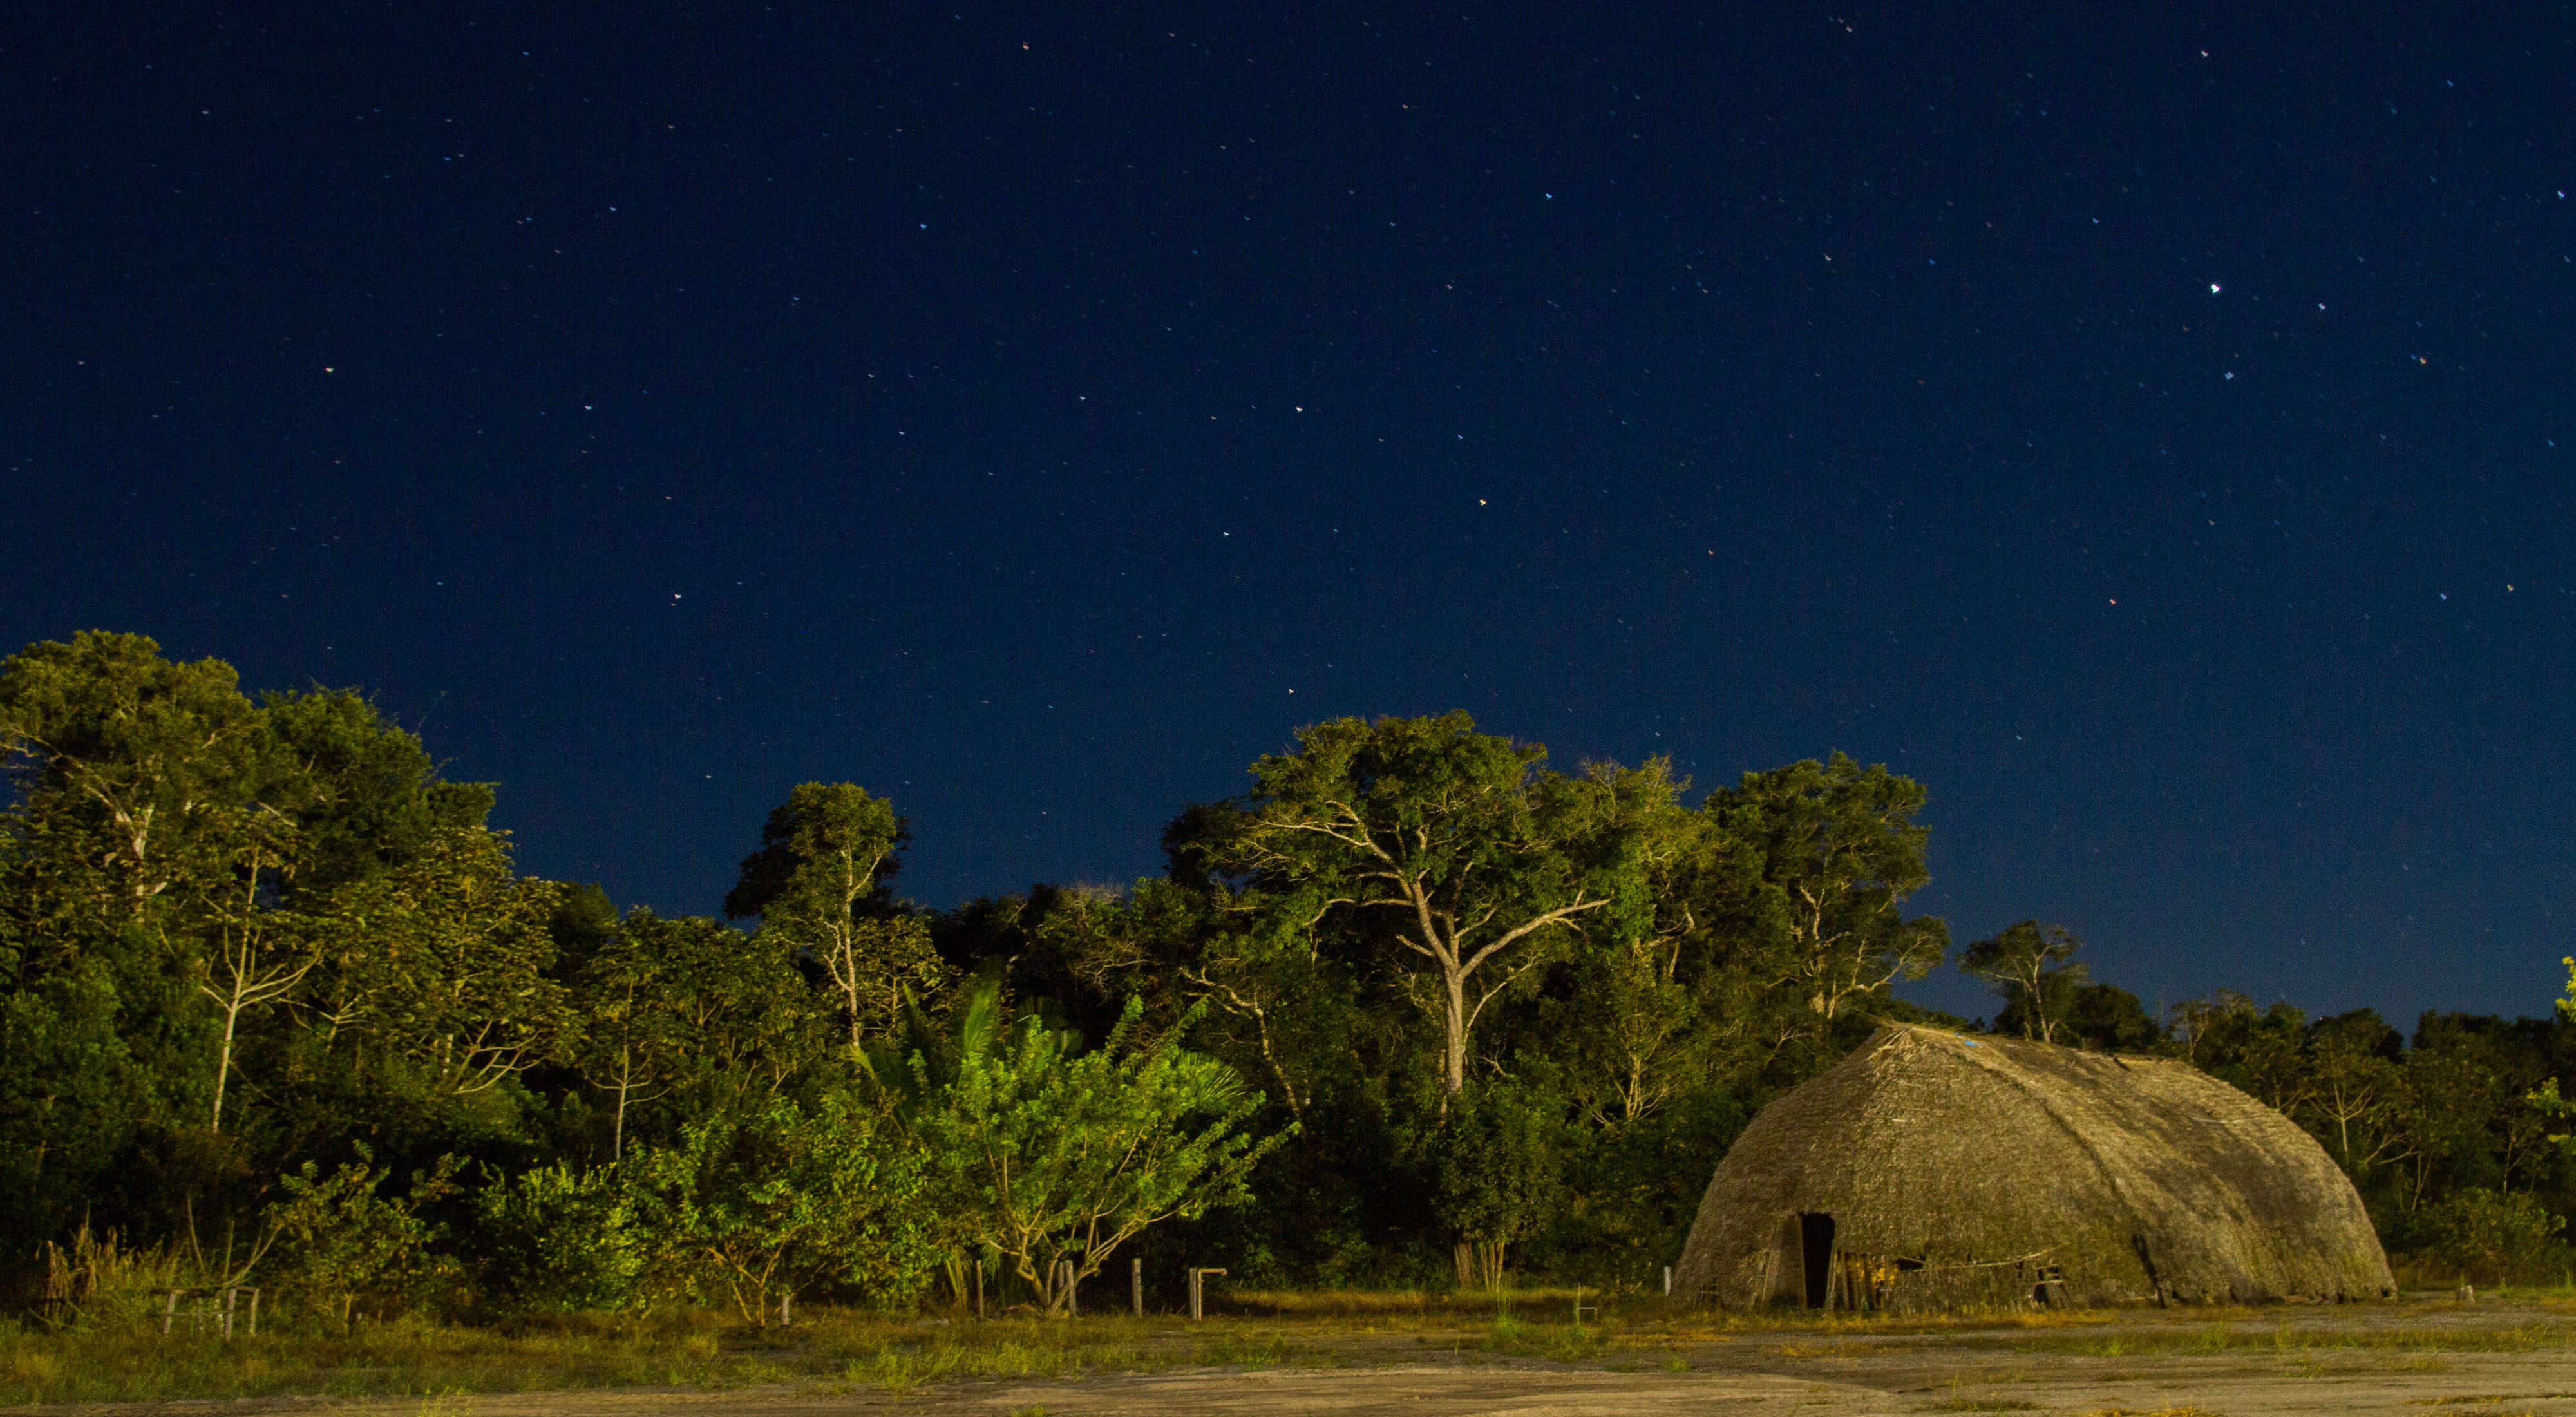 Céu estrelado na Aldeia Wazare, do povo indígena Paresi, em Campo novo do Parecis-MT.